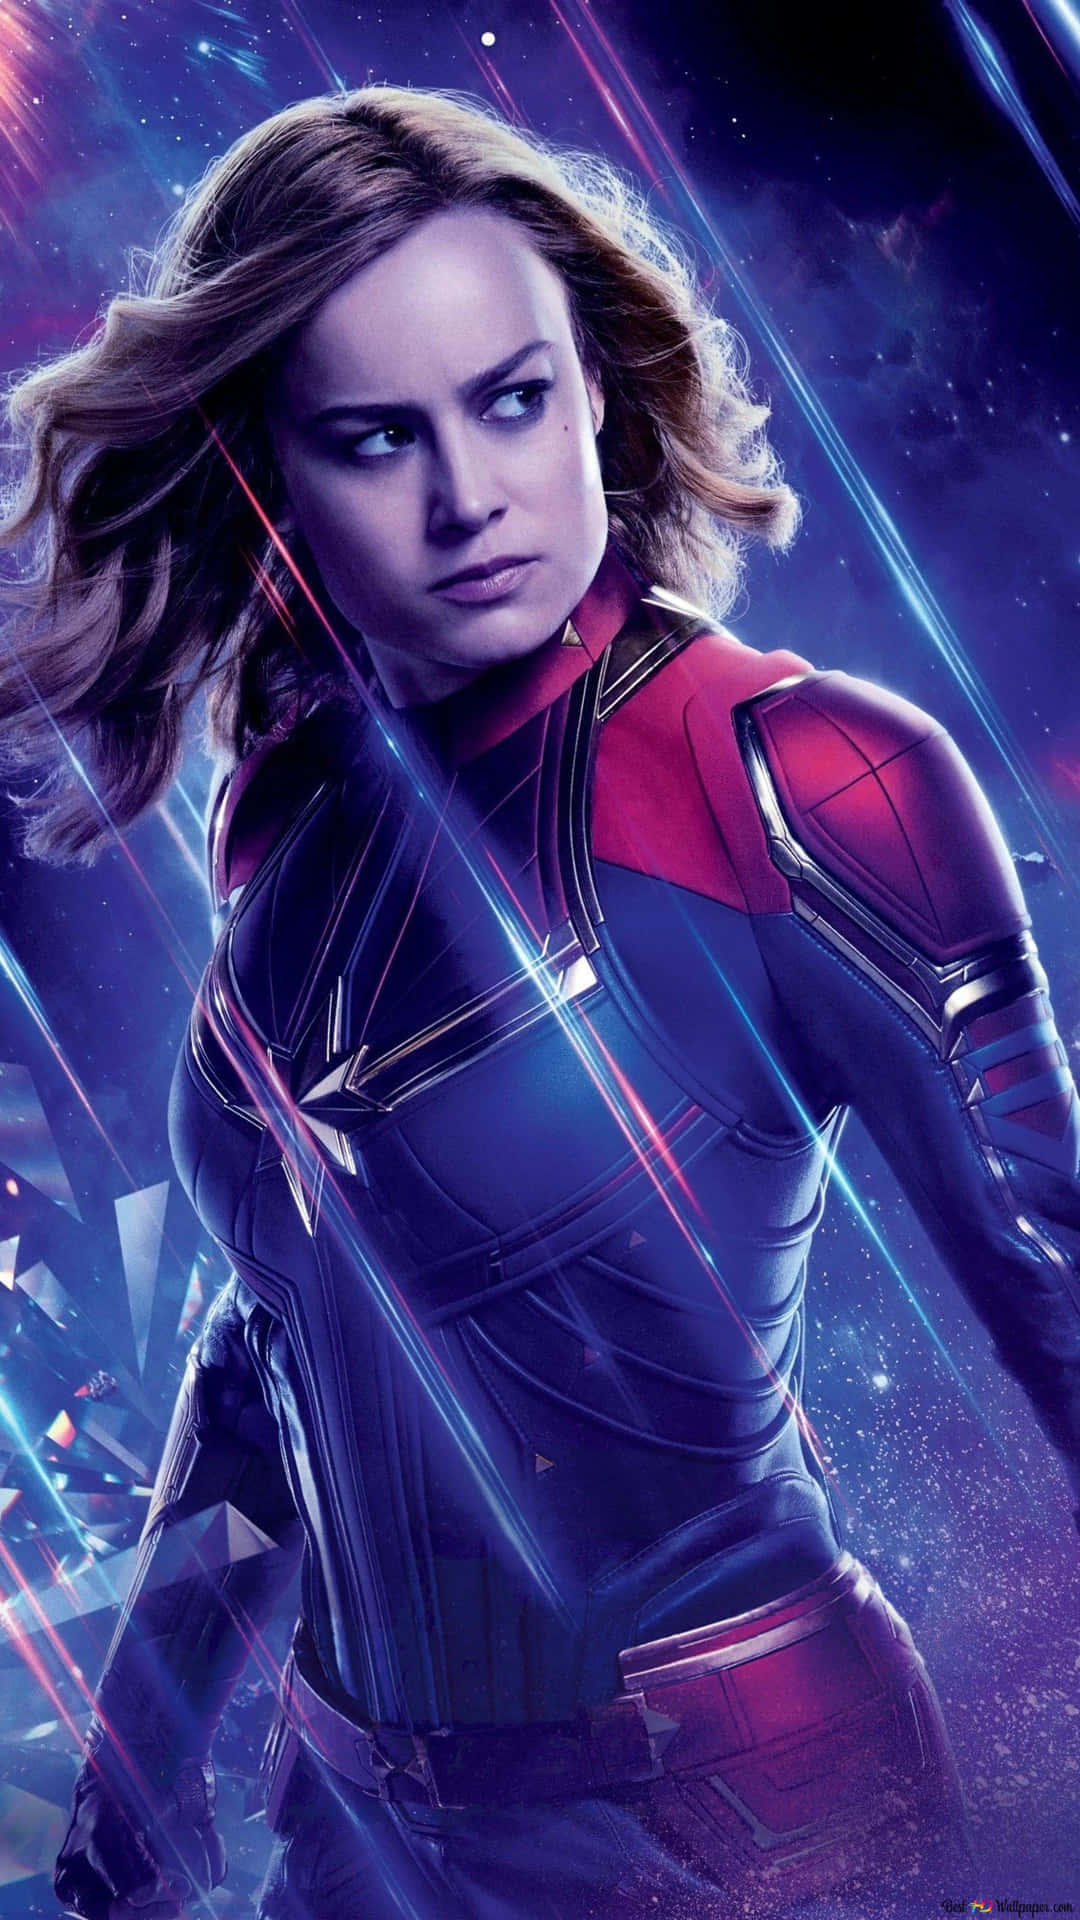 Brie Larson returns as Captain Marvel in her upcoming film Wallpaper